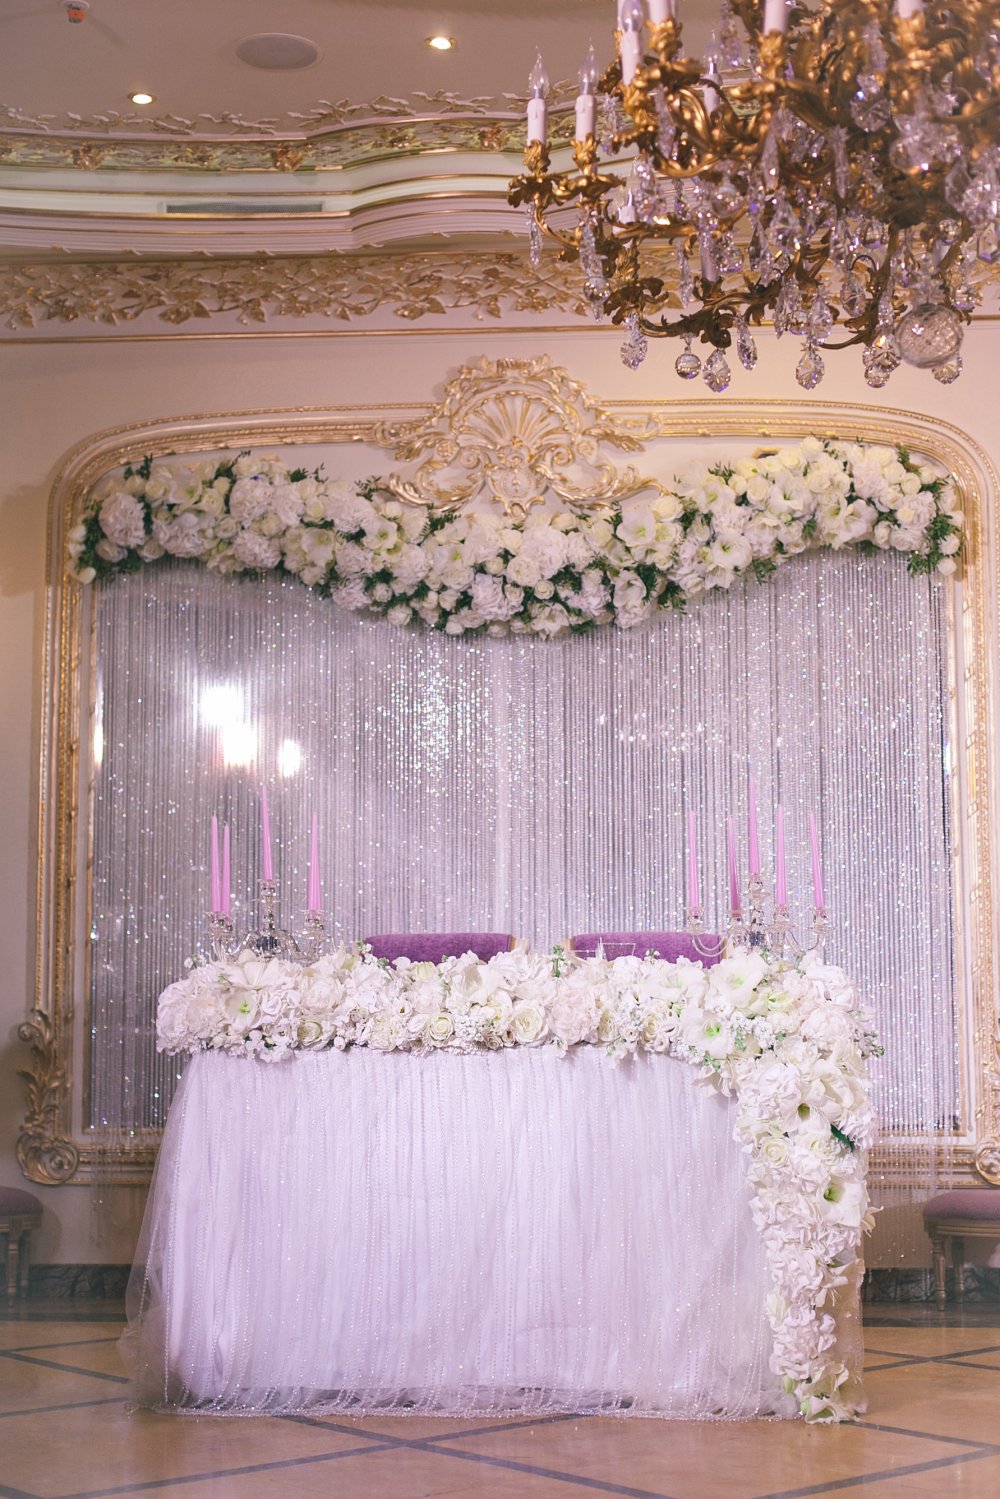 Задник из хрустальных нитей с цветочной композицией по верху, скатерть с хрустальными нитями и ниспадающая со стола цветочная композиция